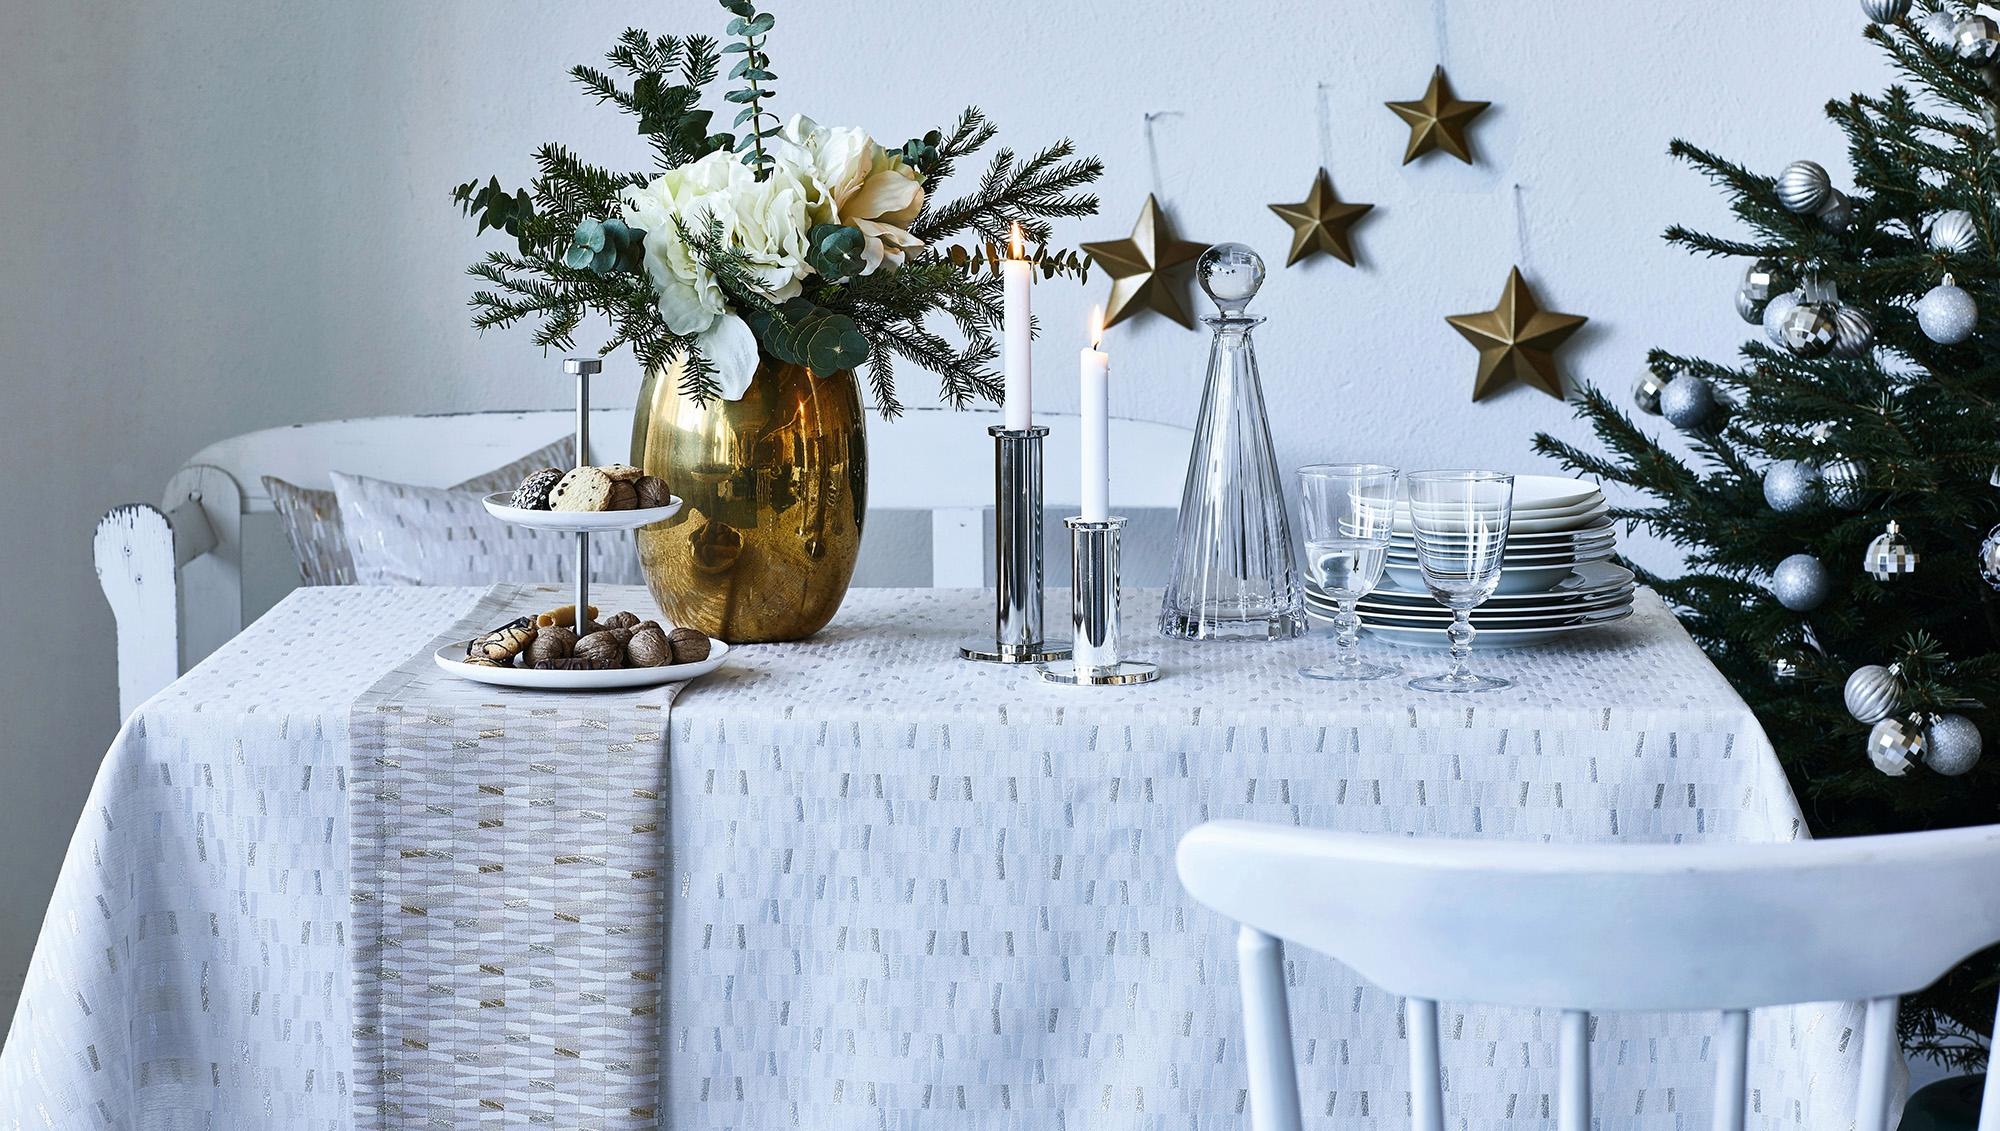 Tischläufer APELT 3006 Christmas Elegance, Weihnachtsdeko, Weihnachten  Tischdeck | eBay